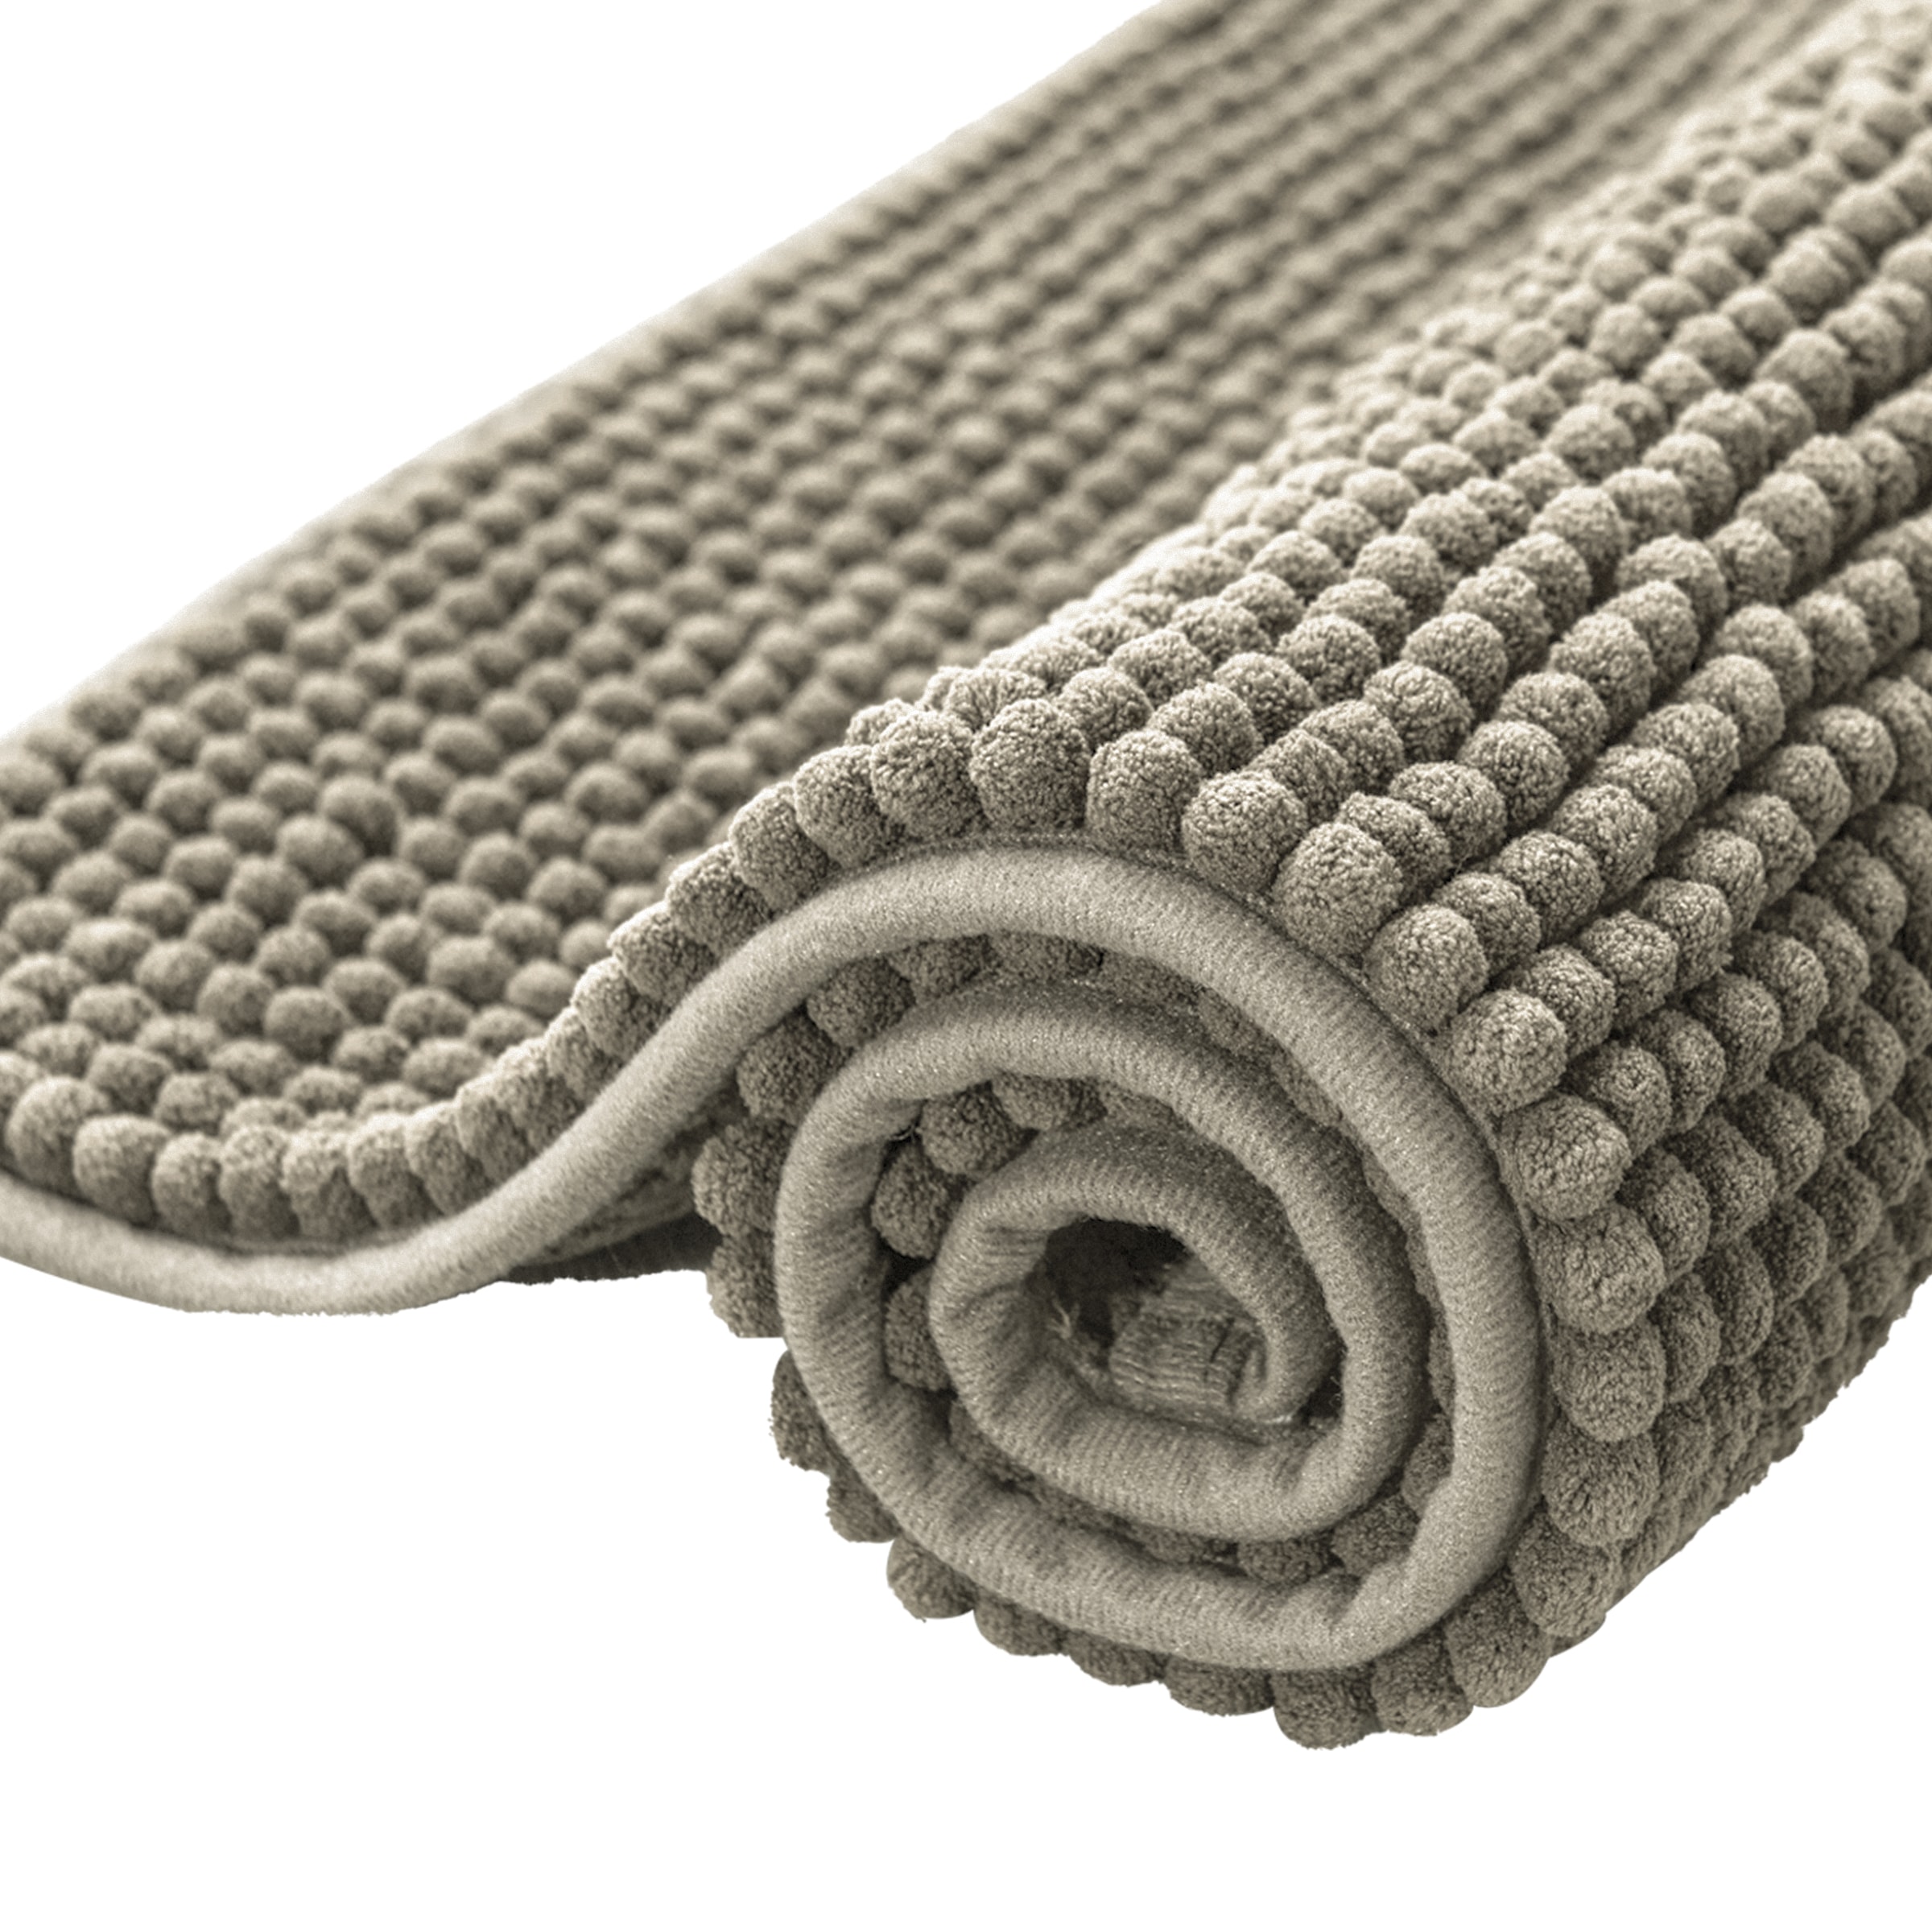 Non-Slip Microfiber Bath Mat Super Absorbent Rug Soft Carpet 3 Colors 24 x 16" 